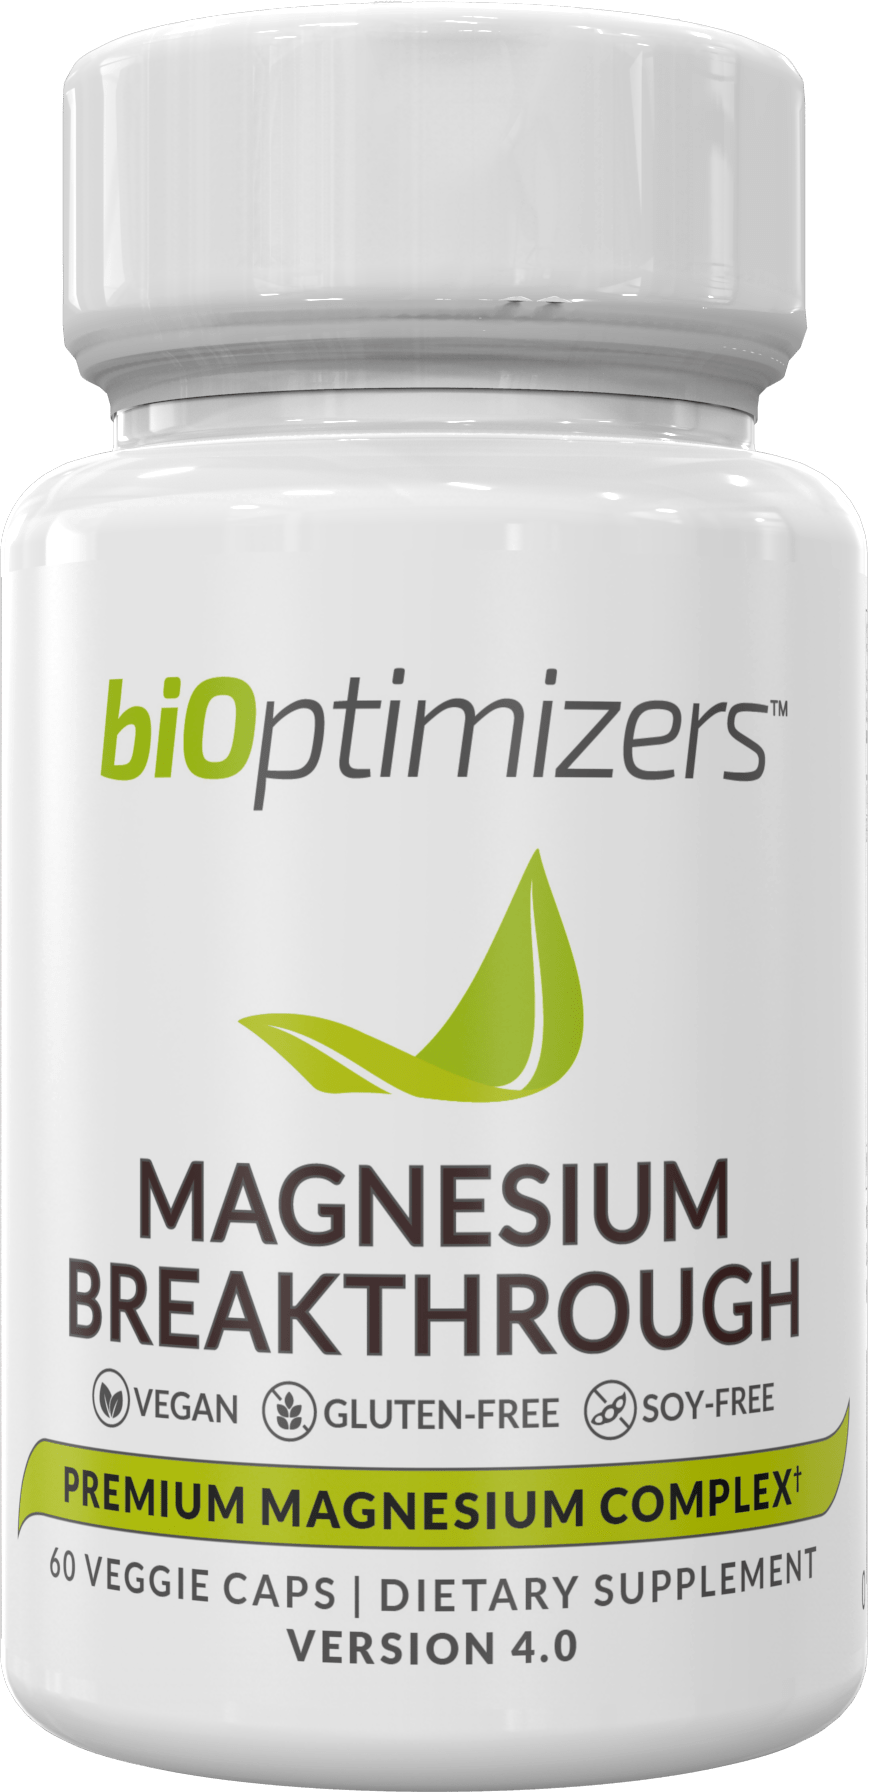 magnesium-breakthrough